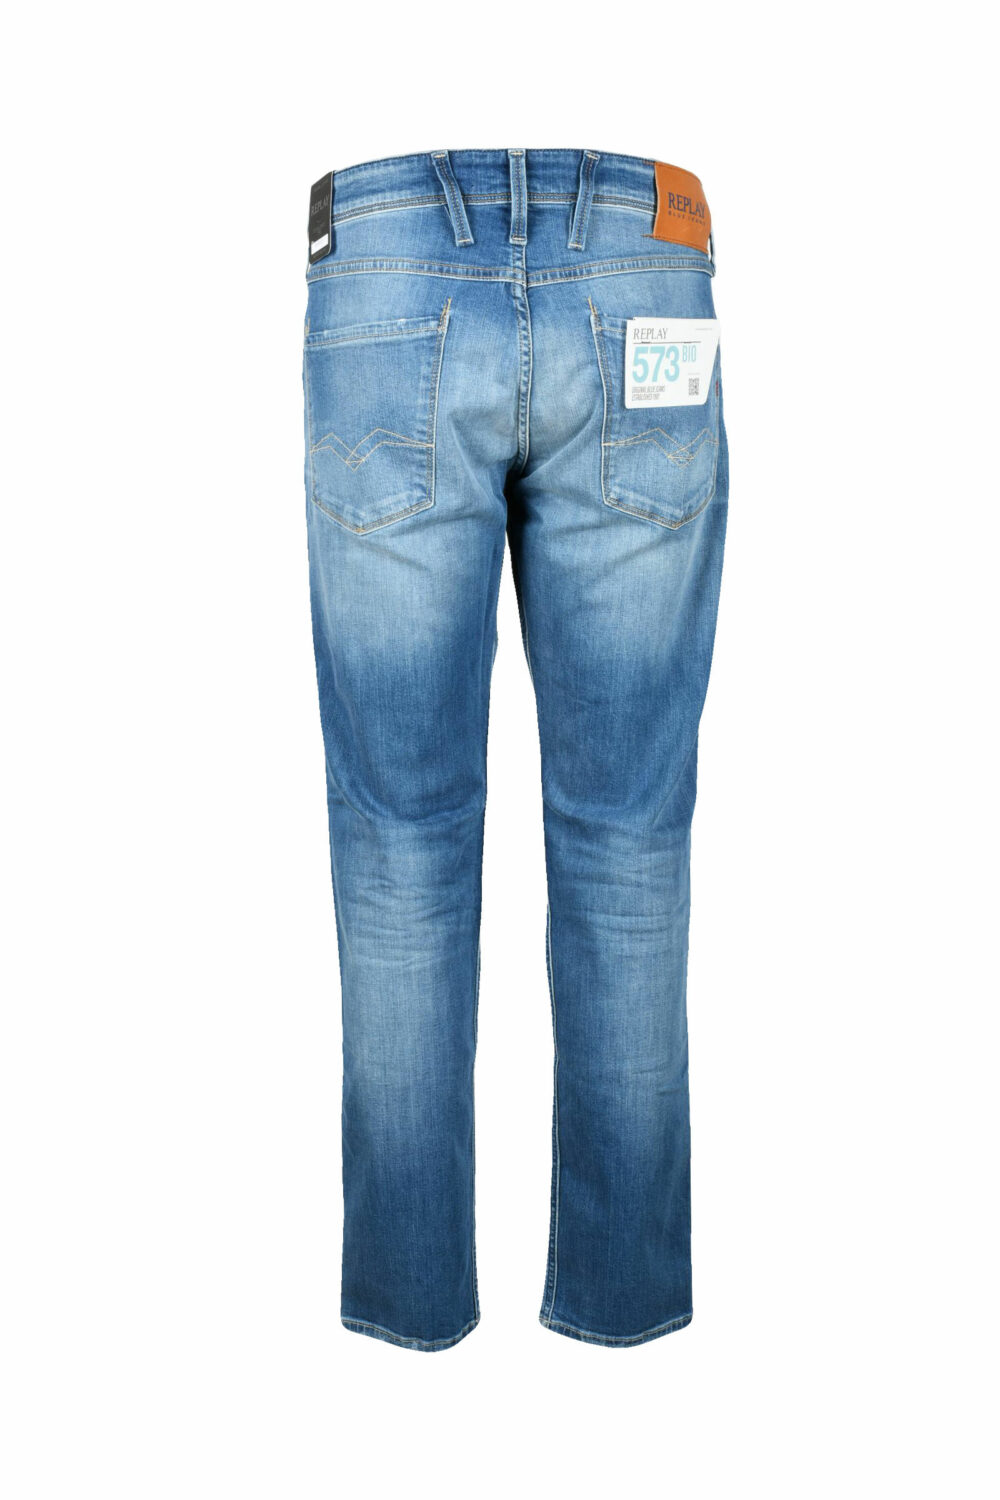 Jeans Replay Denim - Foto 1